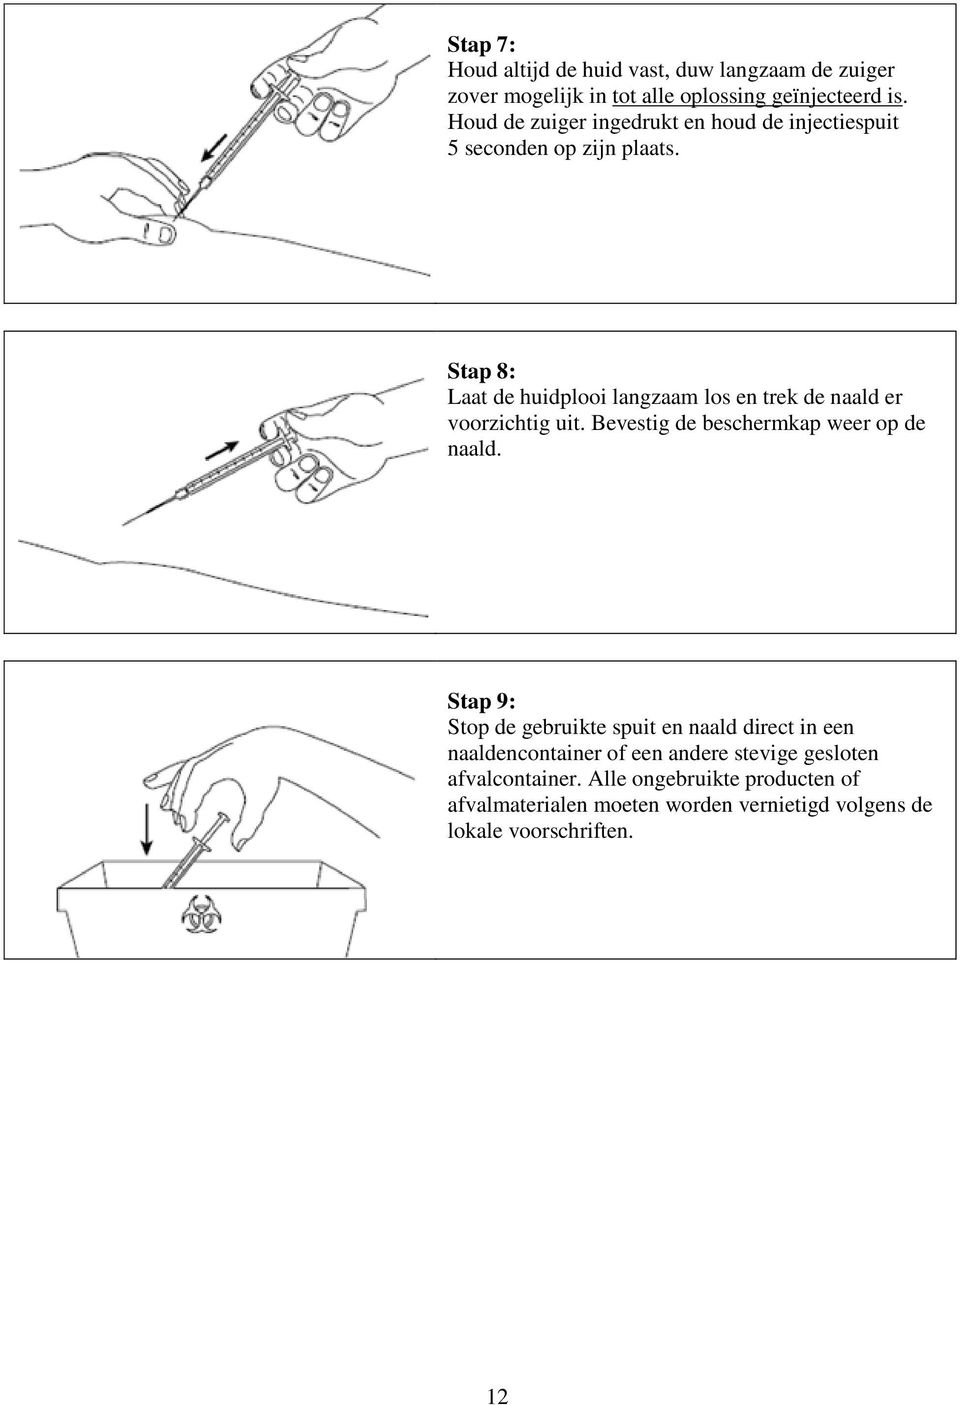 Stap 8: Laat de huidplooi langzaam los en trek de naald er voorzichtig uit. Bevestig de beschermkap weer op de naald.